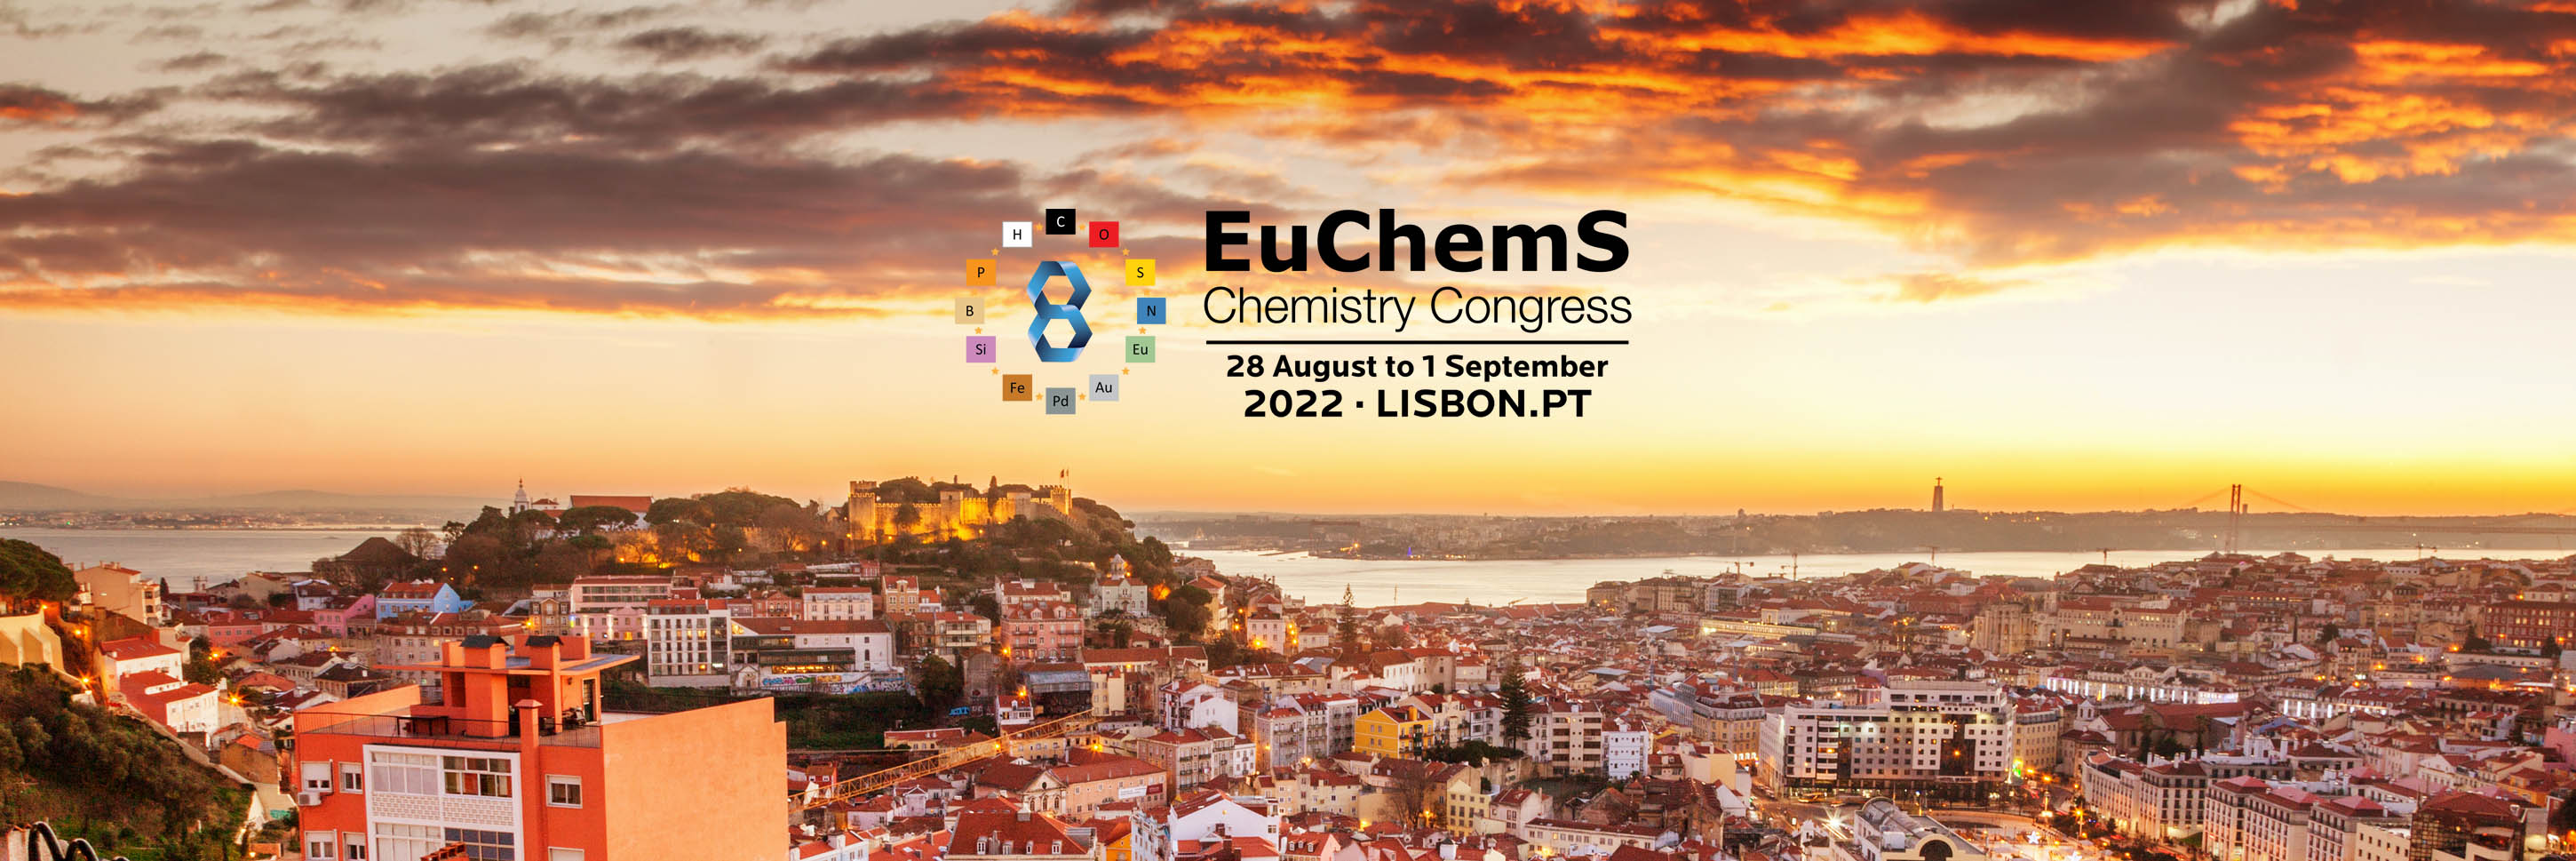 Logo EuChemS Chemistry Congress 2022